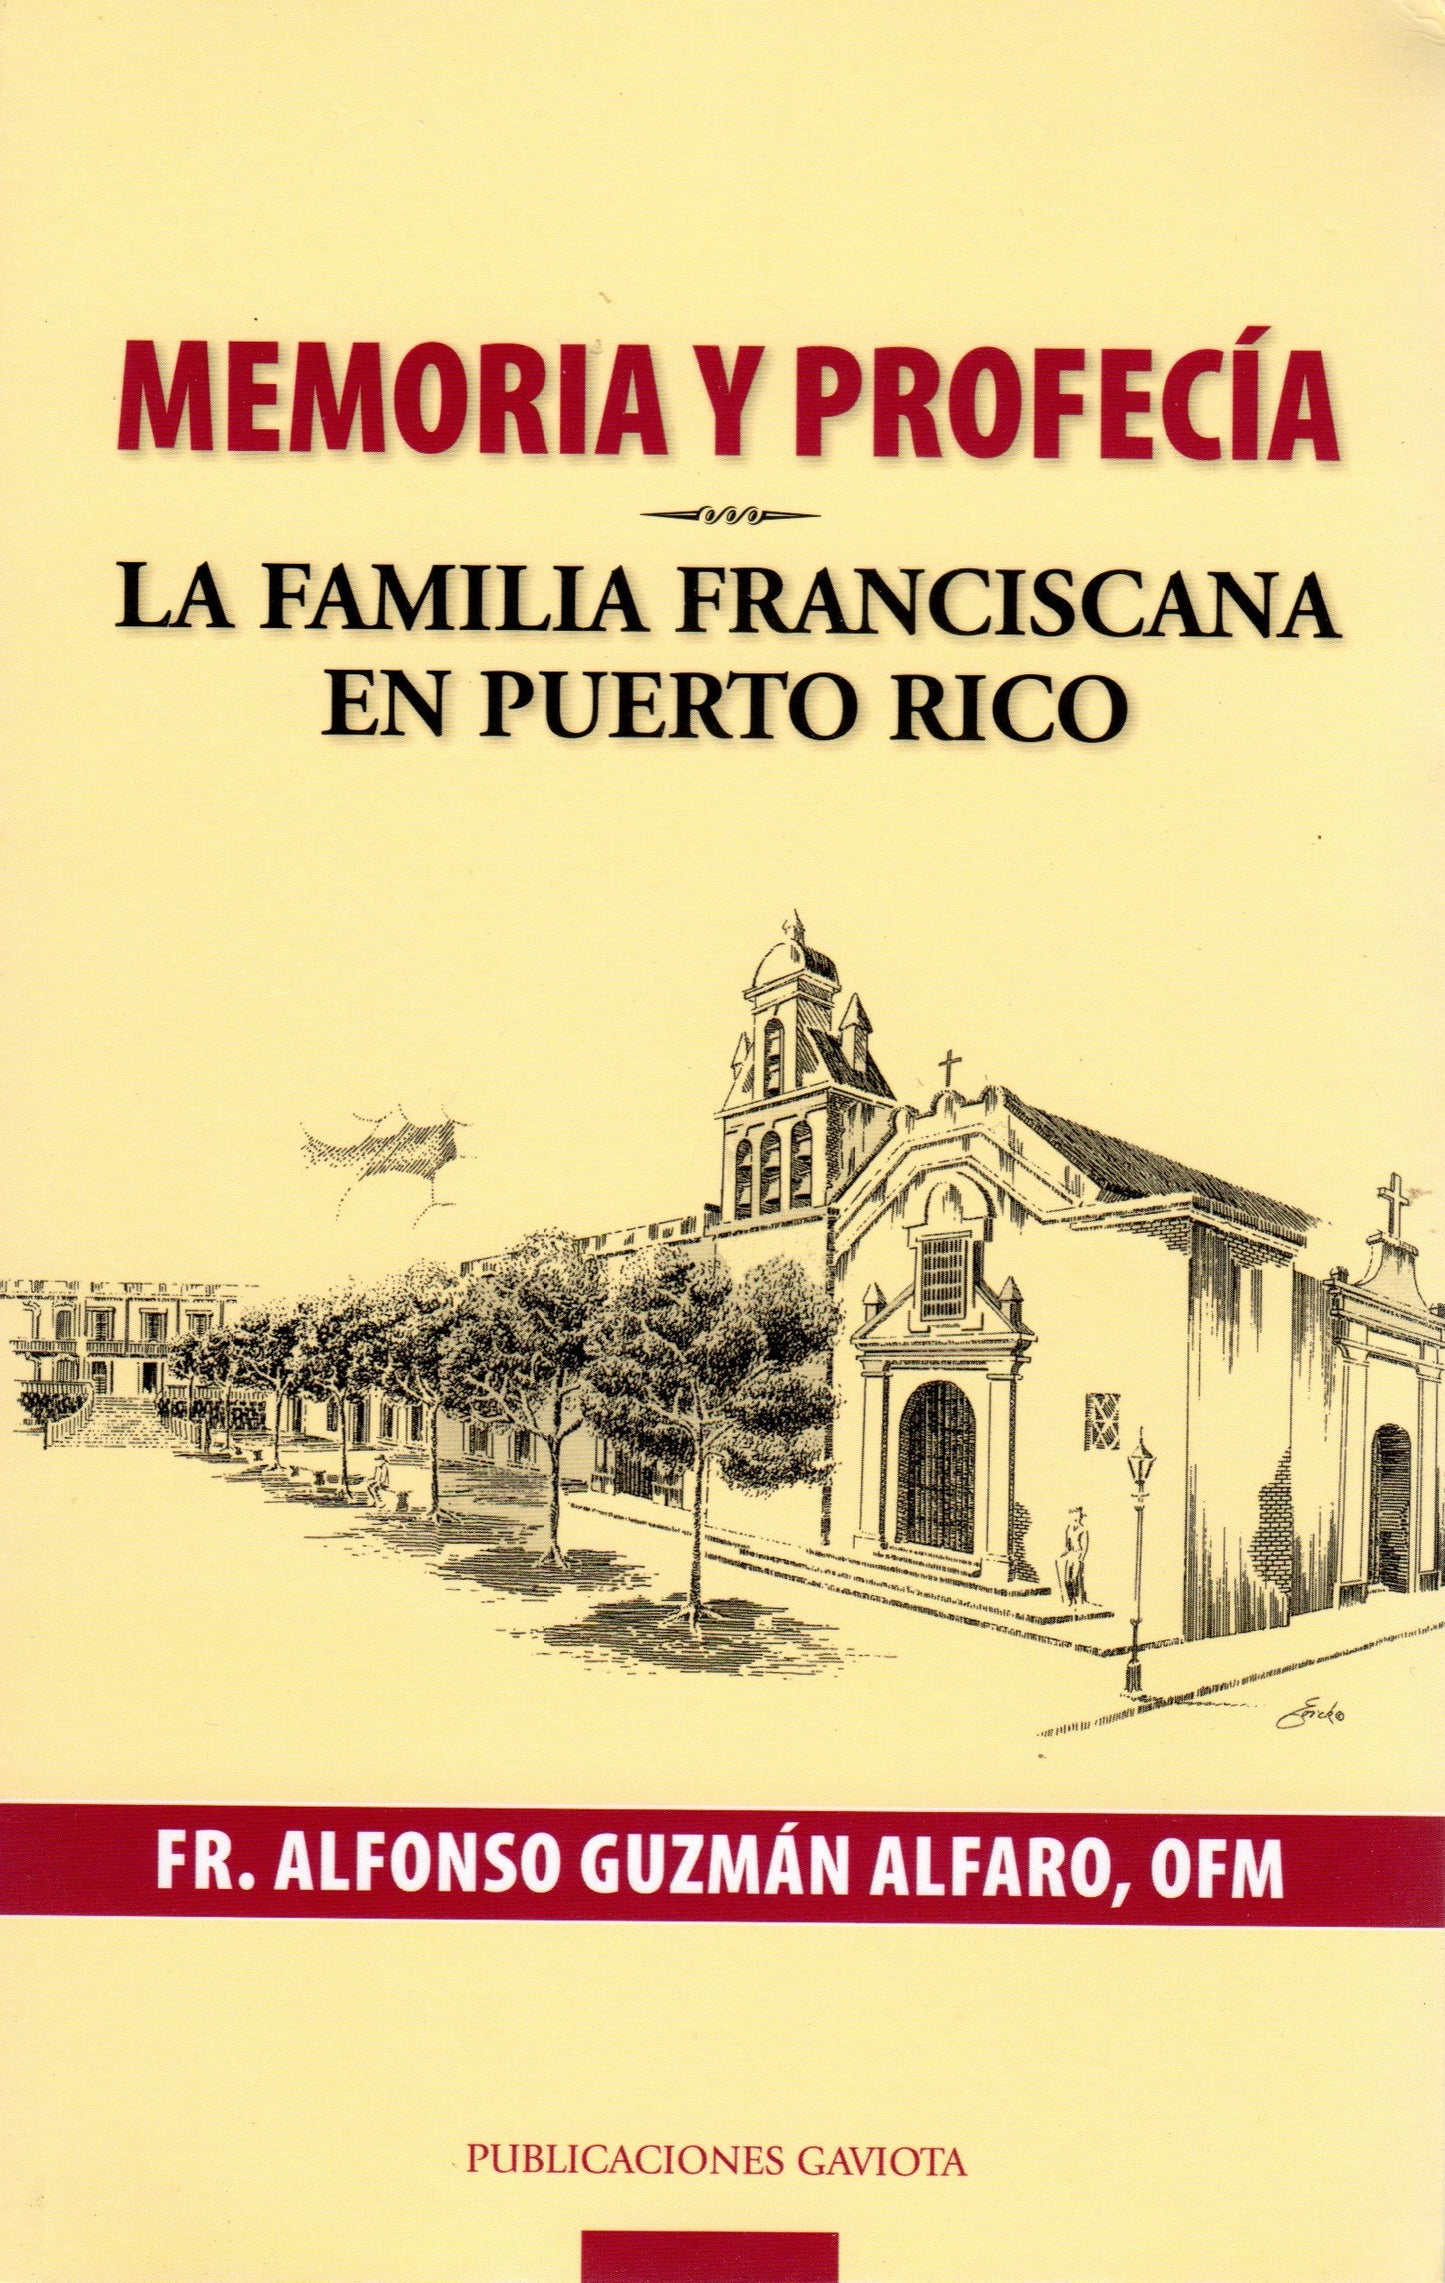 Memorias y profecía: La familia franciscana en Puerto Rico